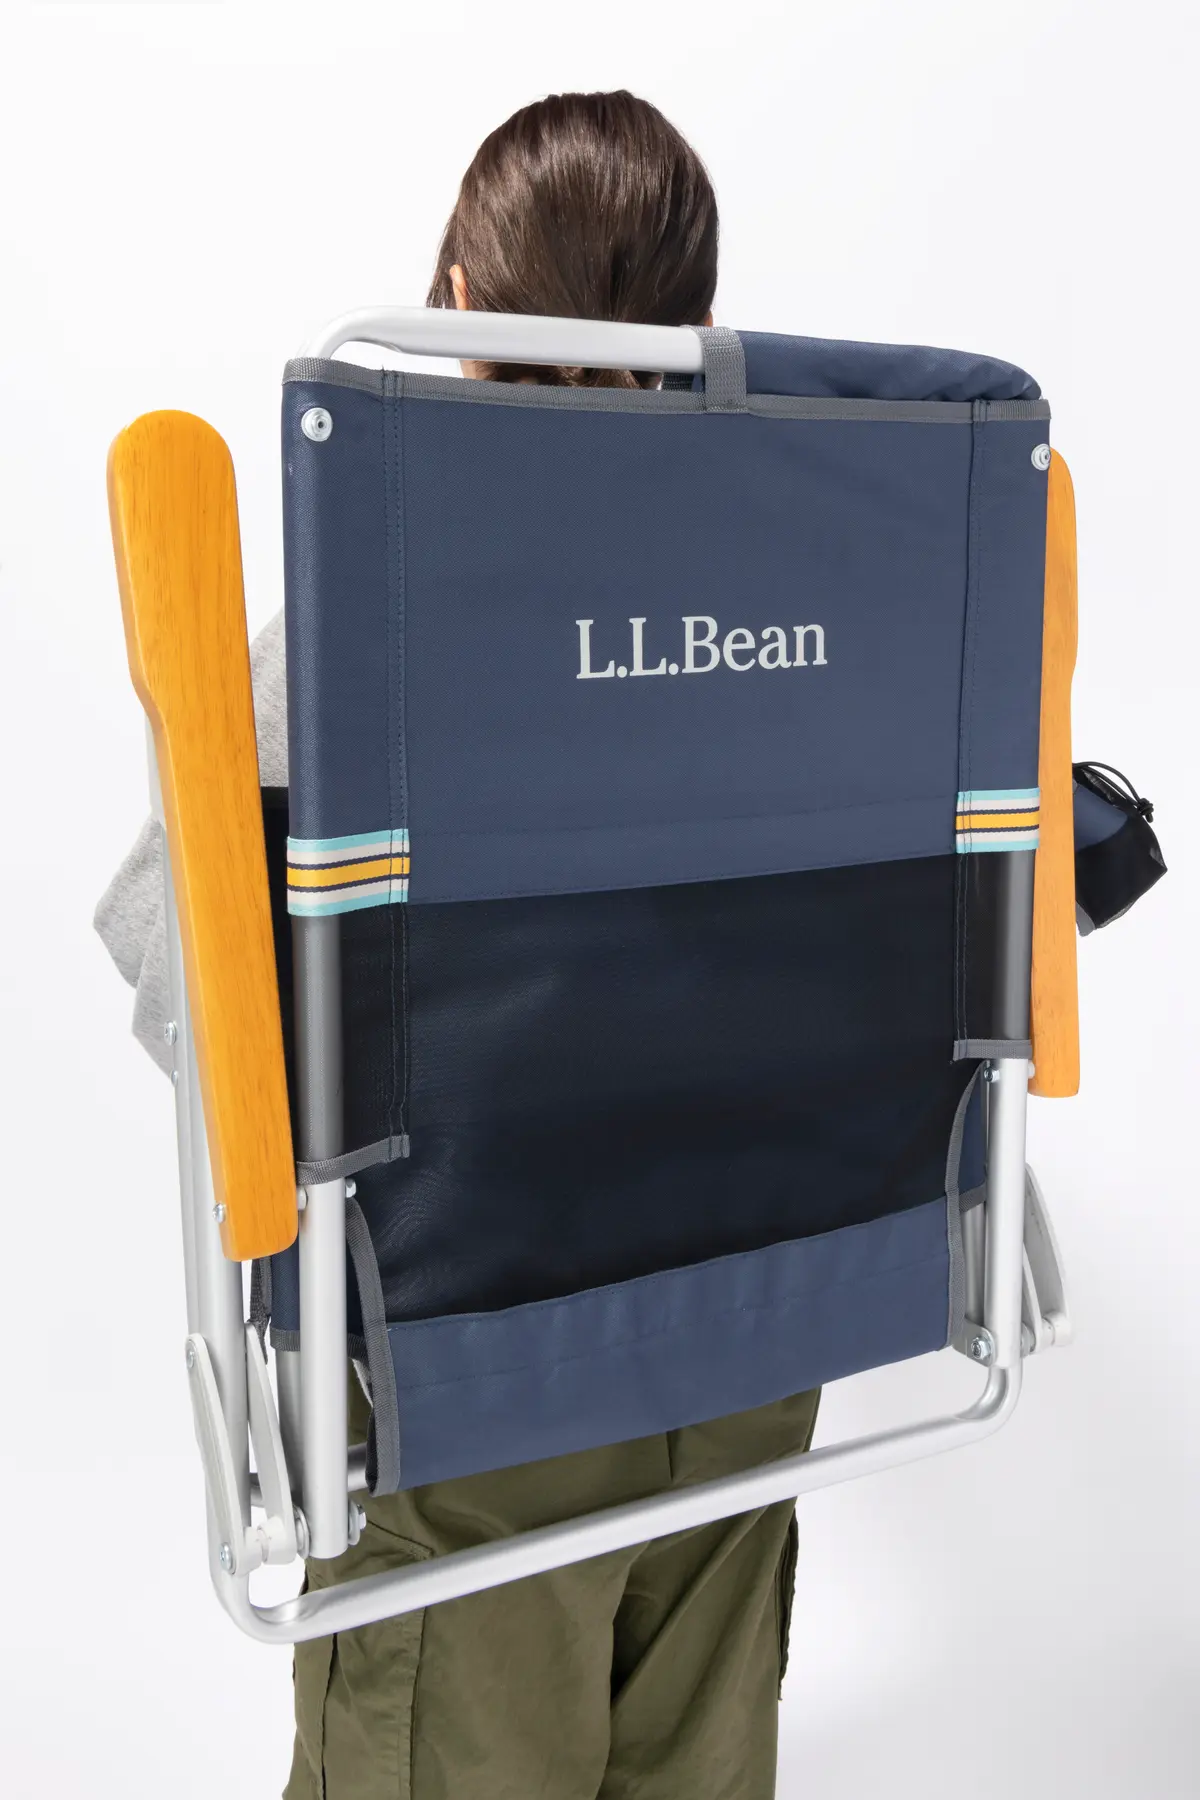 『L.L.Bean』の椅子を背負ったときの画像